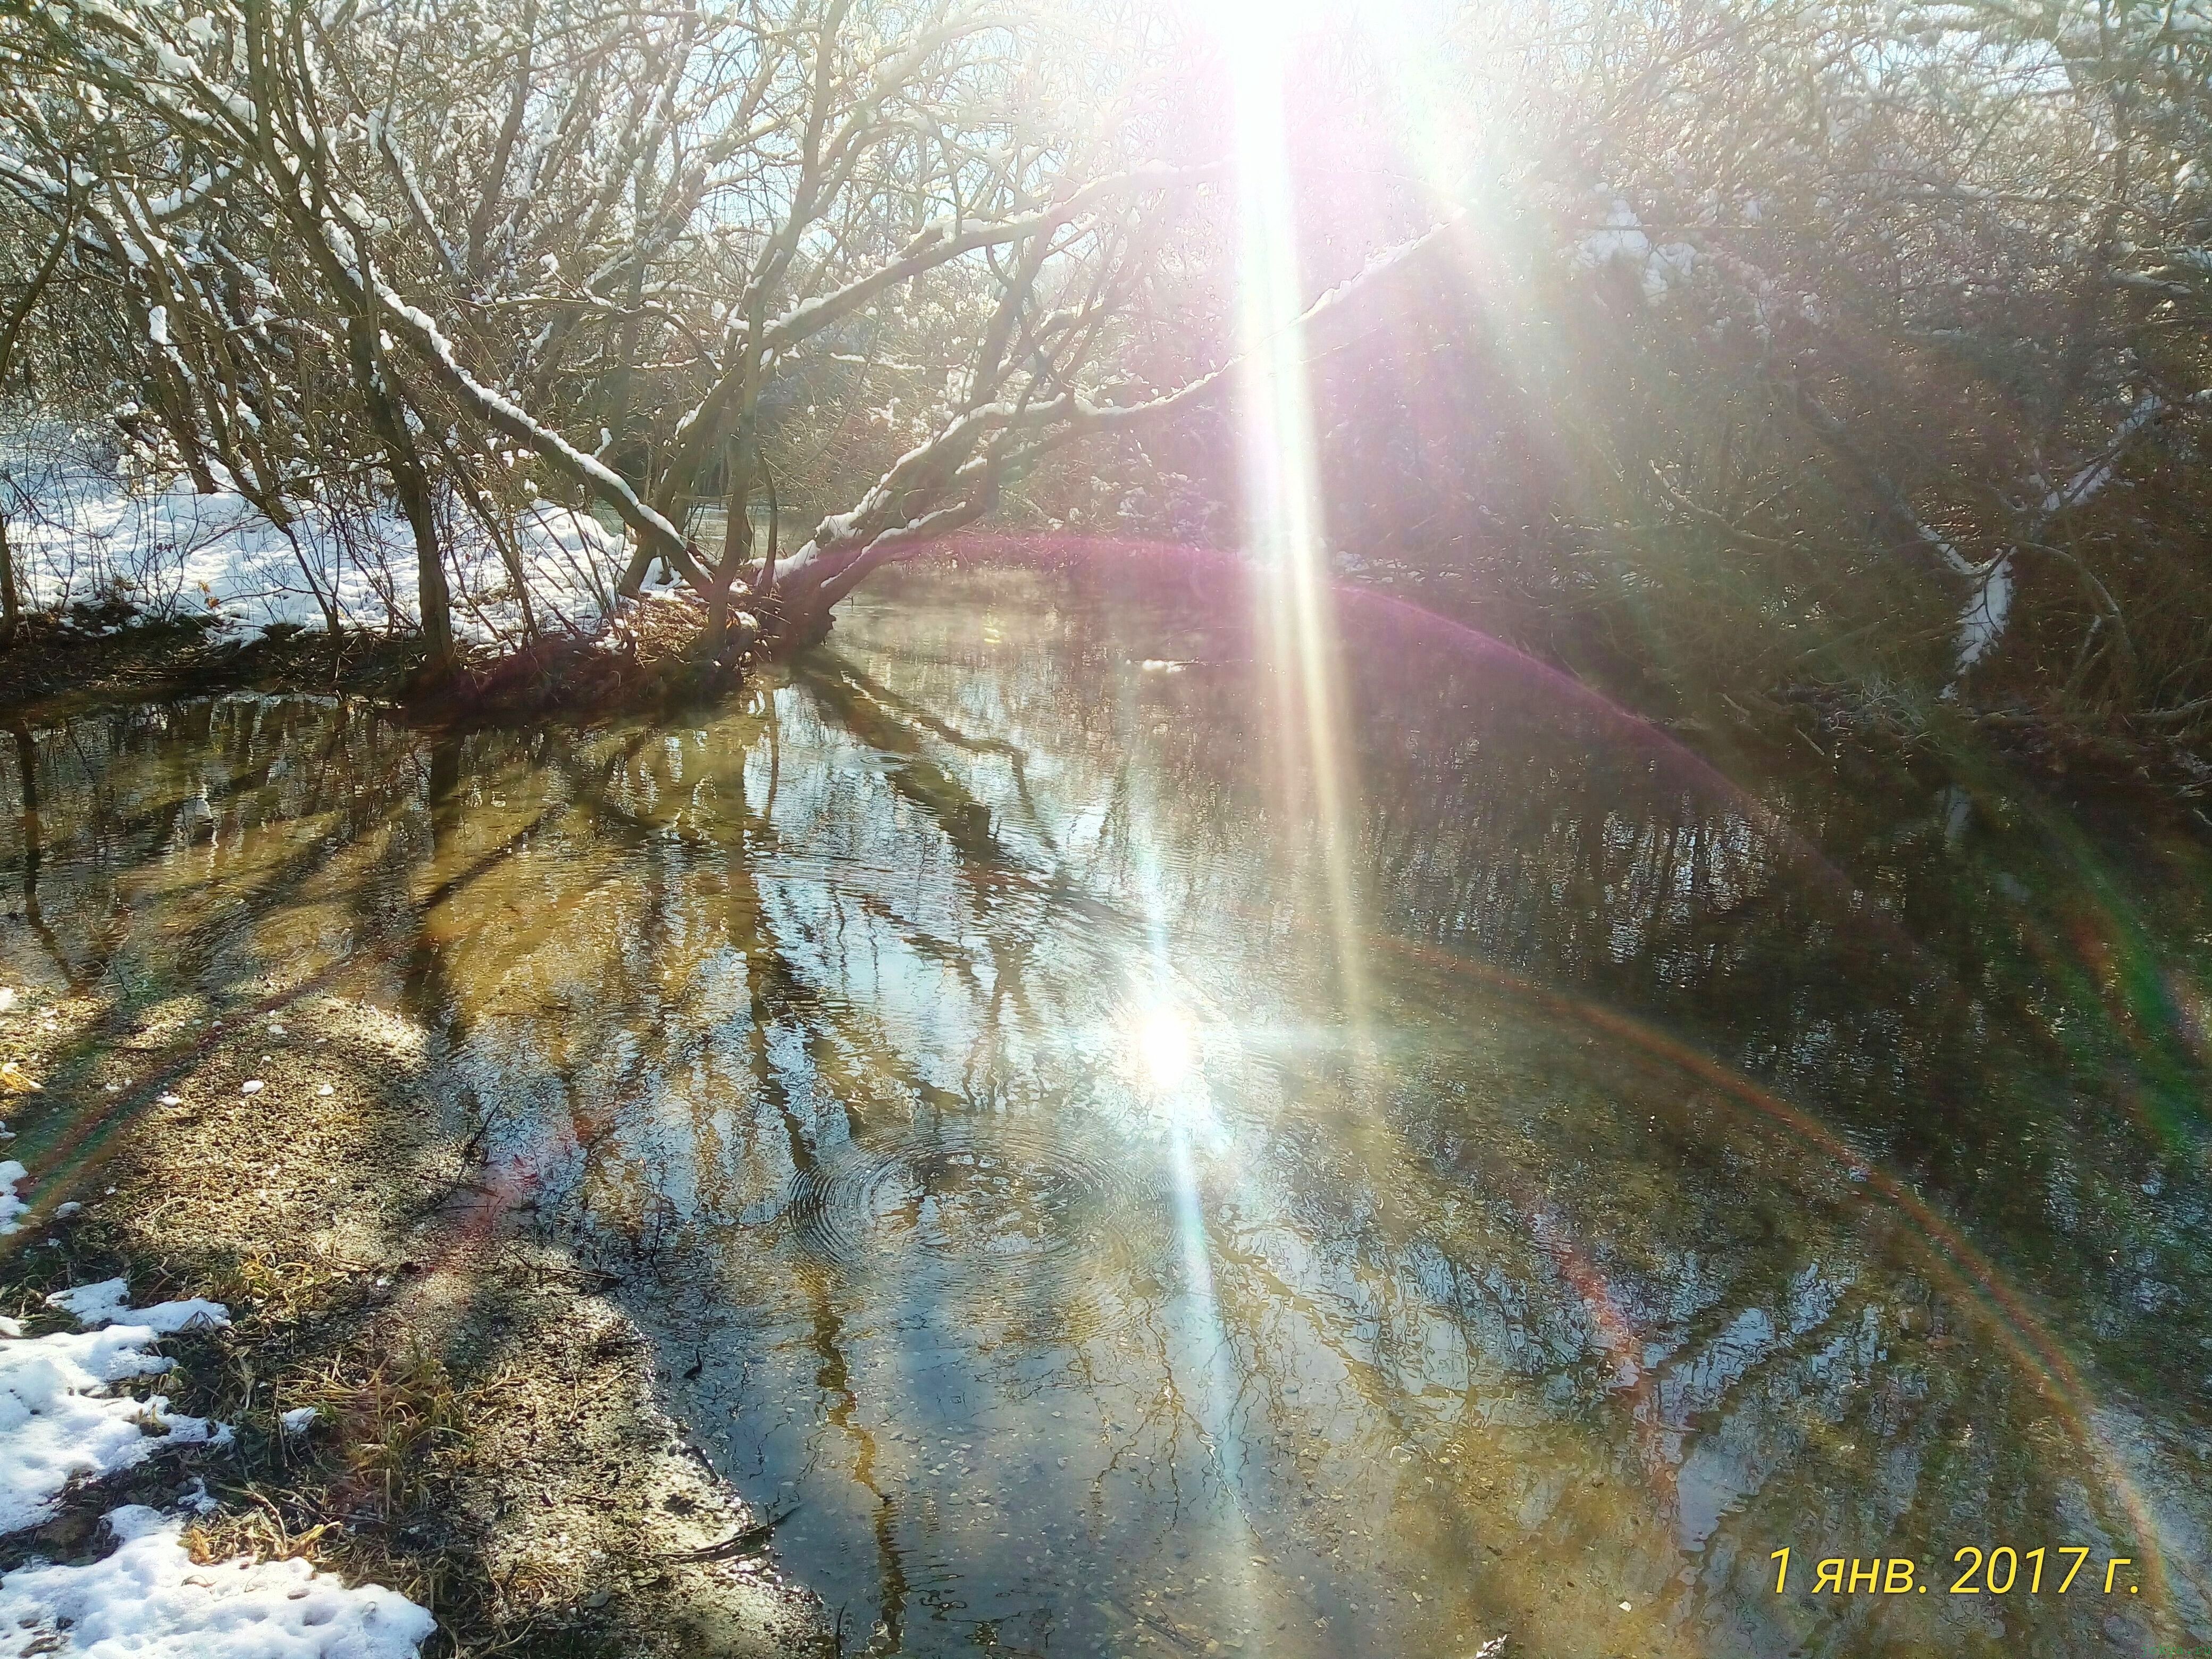 Пикник в лесу на 1 января 2017 года у реки Карасевка, где исток фото заметка о моей реальности в Крыму jokya.ru 